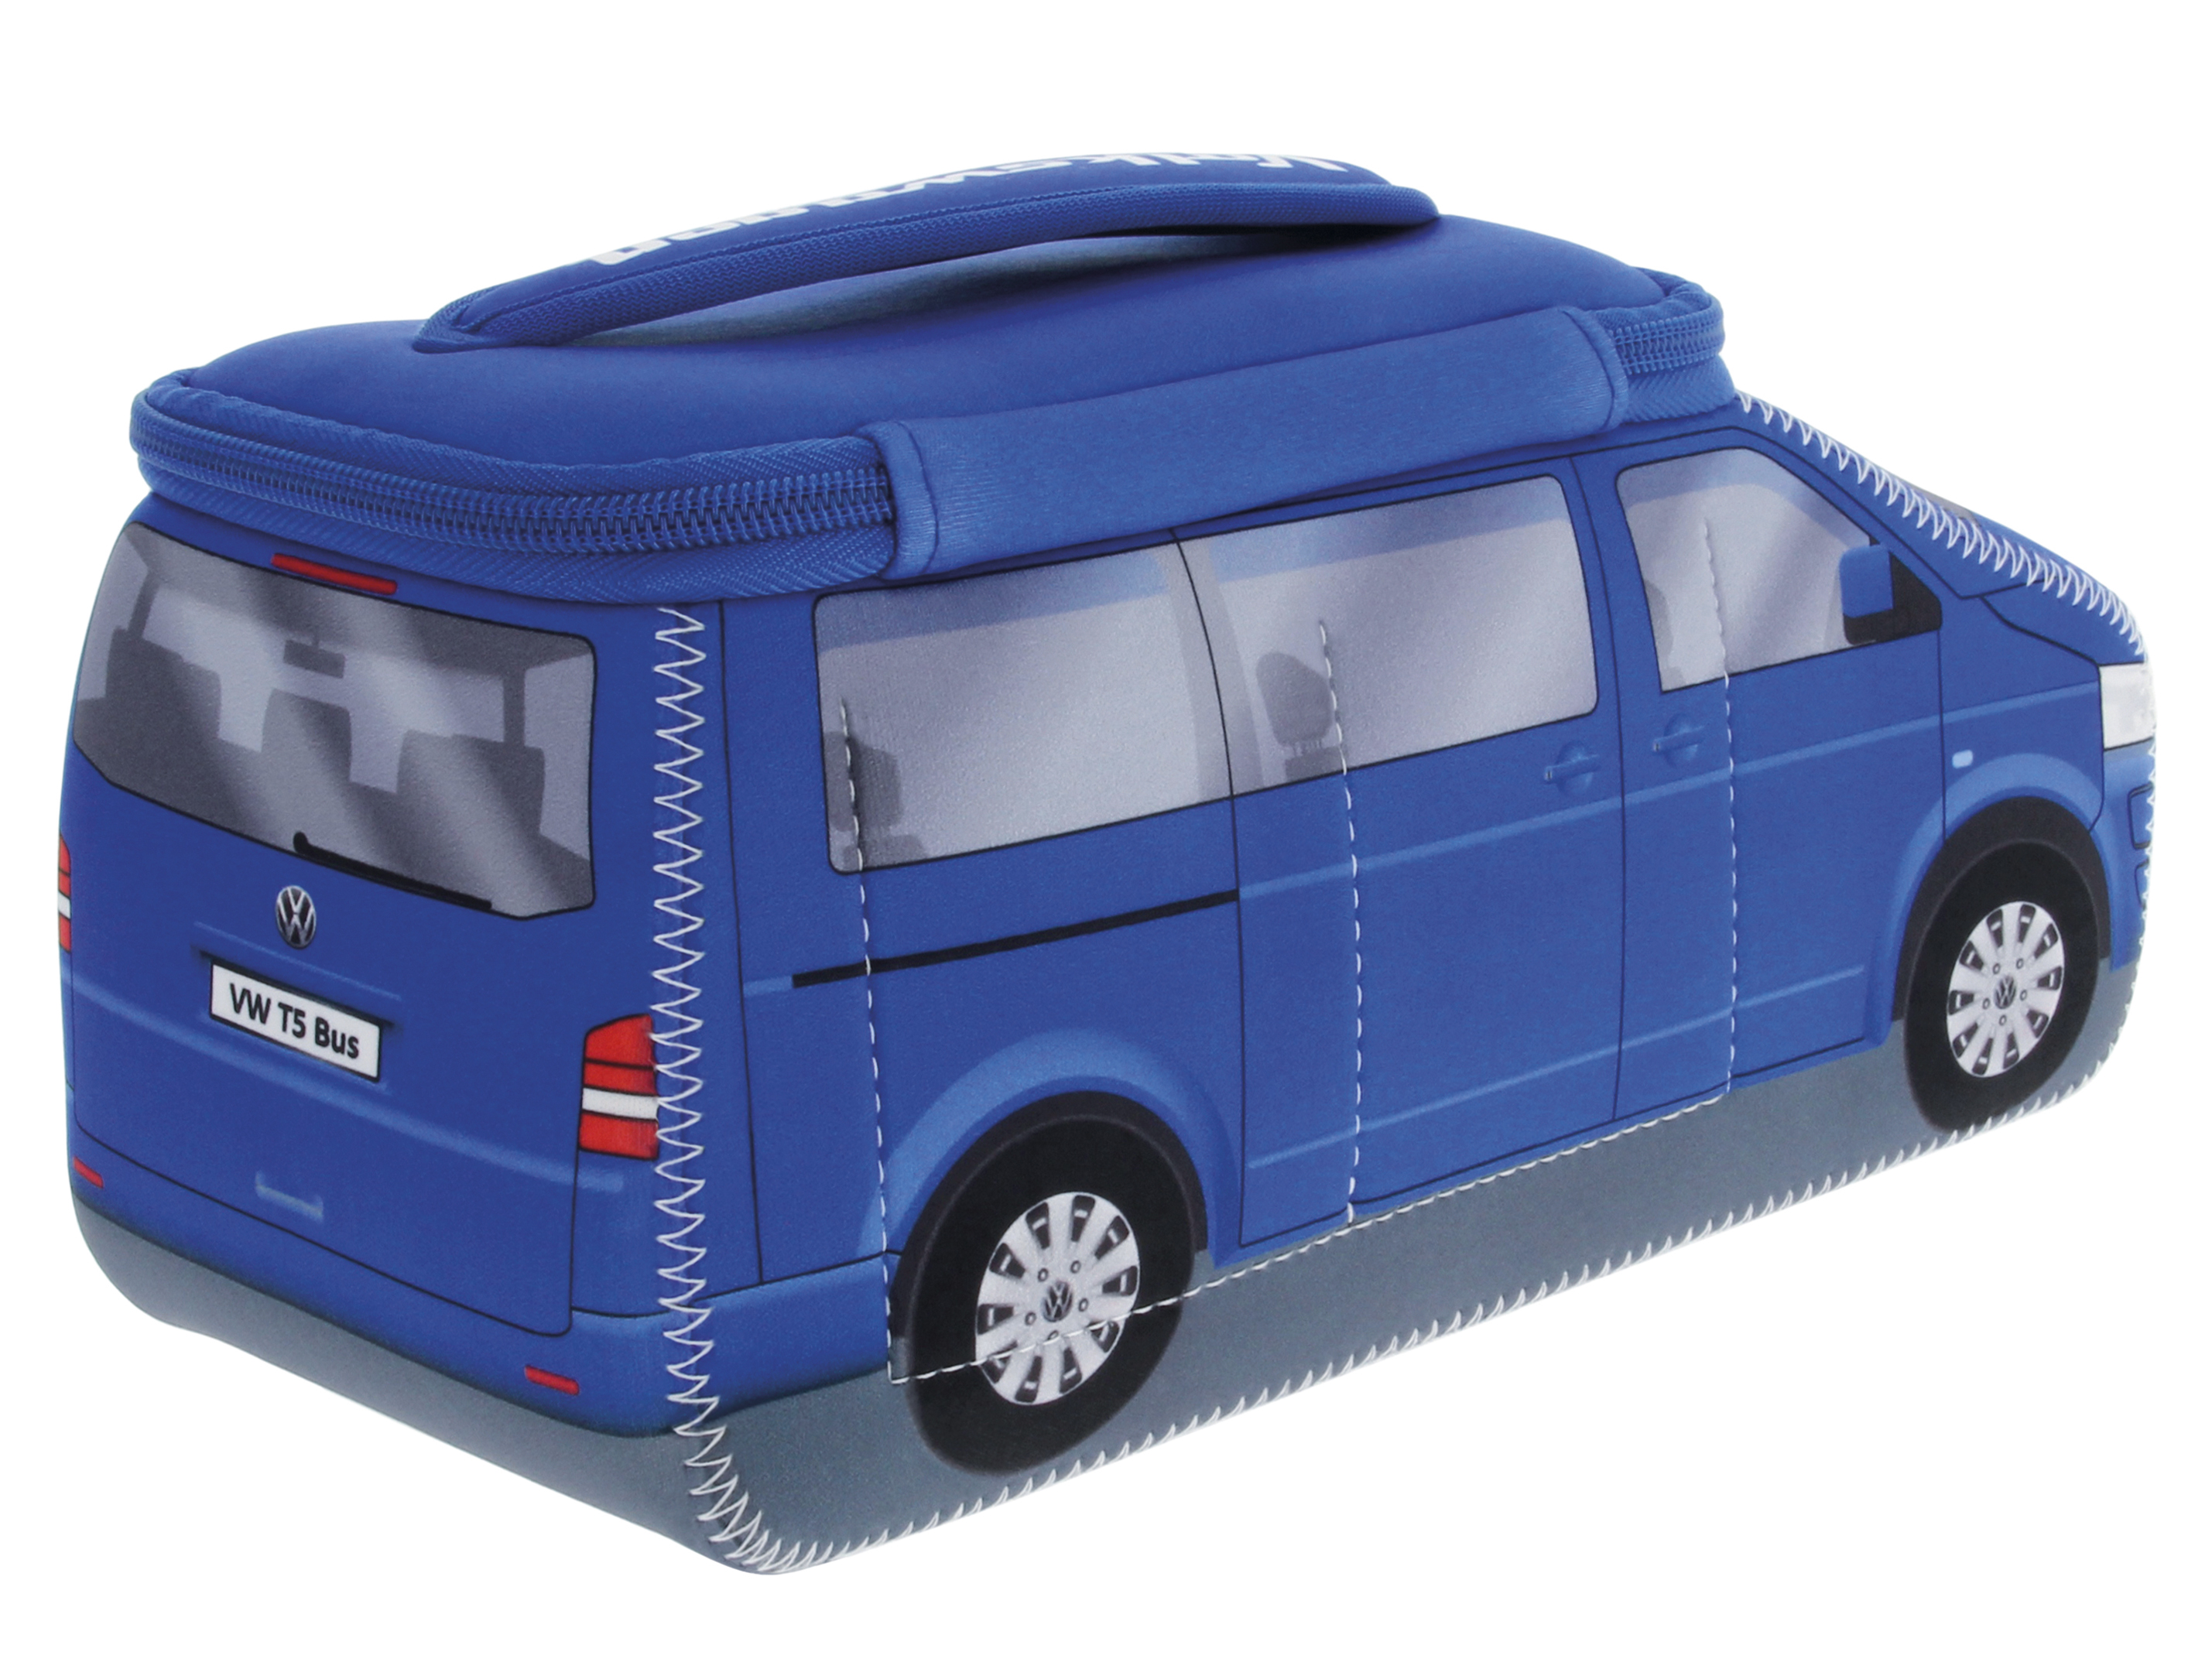 VW T5 Bulli Bus 3D Neopren Universaltasche - Groß